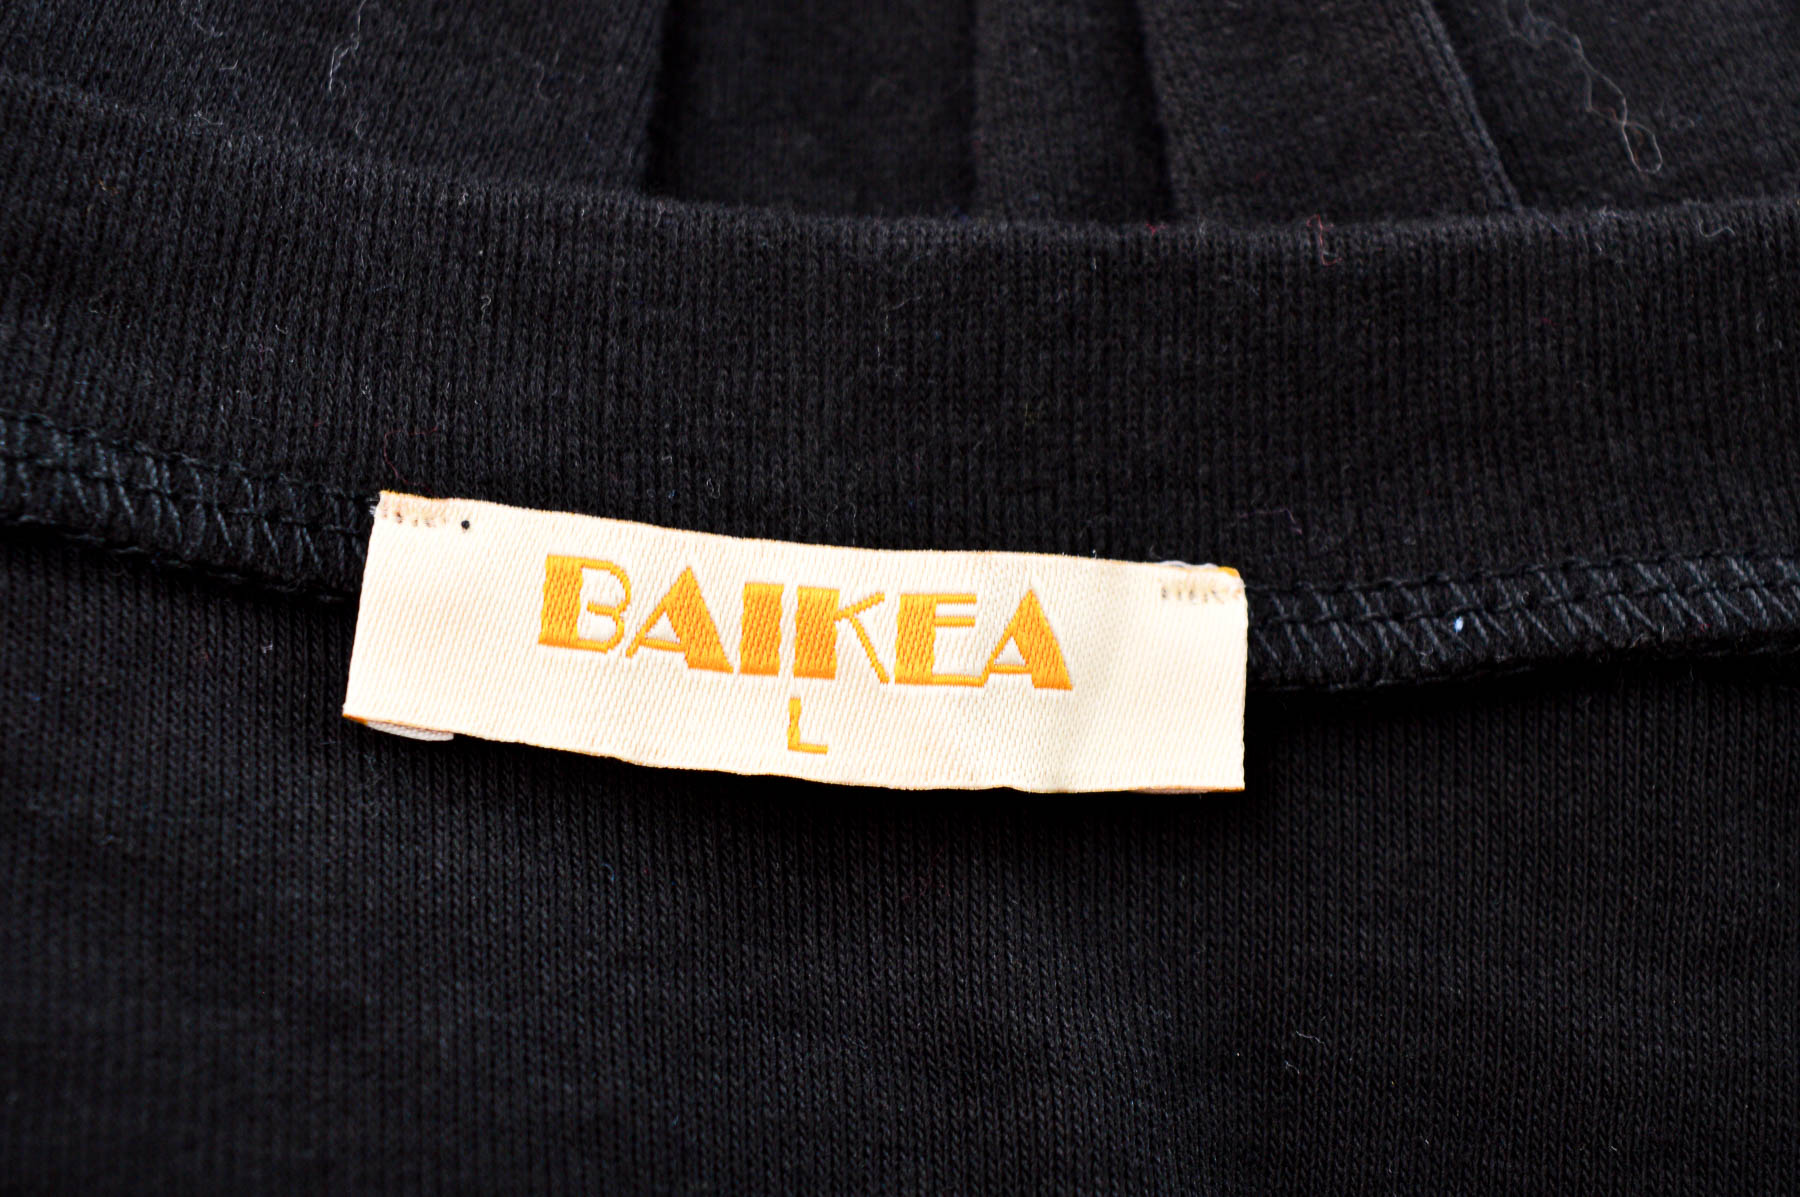 Women's blouse - Baikea - 2